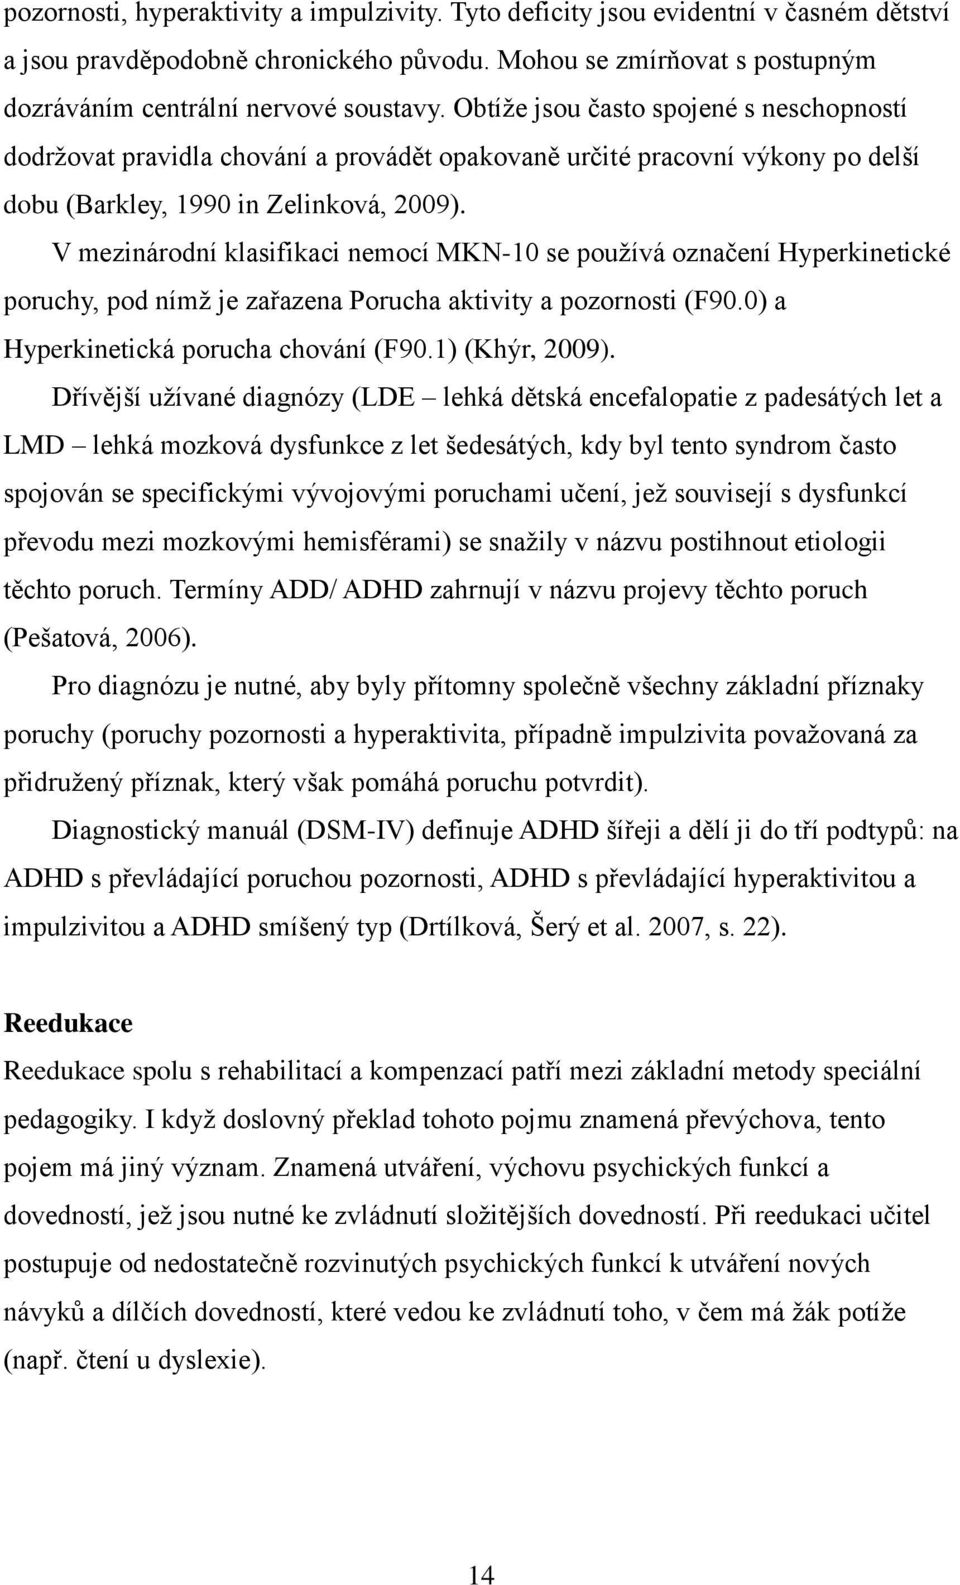 V mezinárodní klasifikaci nemocí MKN-10 se používá označení Hyperkinetické poruchy, pod nímž je zařazena Porucha aktivity a pozornosti (F90.0) a Hyperkinetická porucha chování (F90.1) (Khýr, 2009).